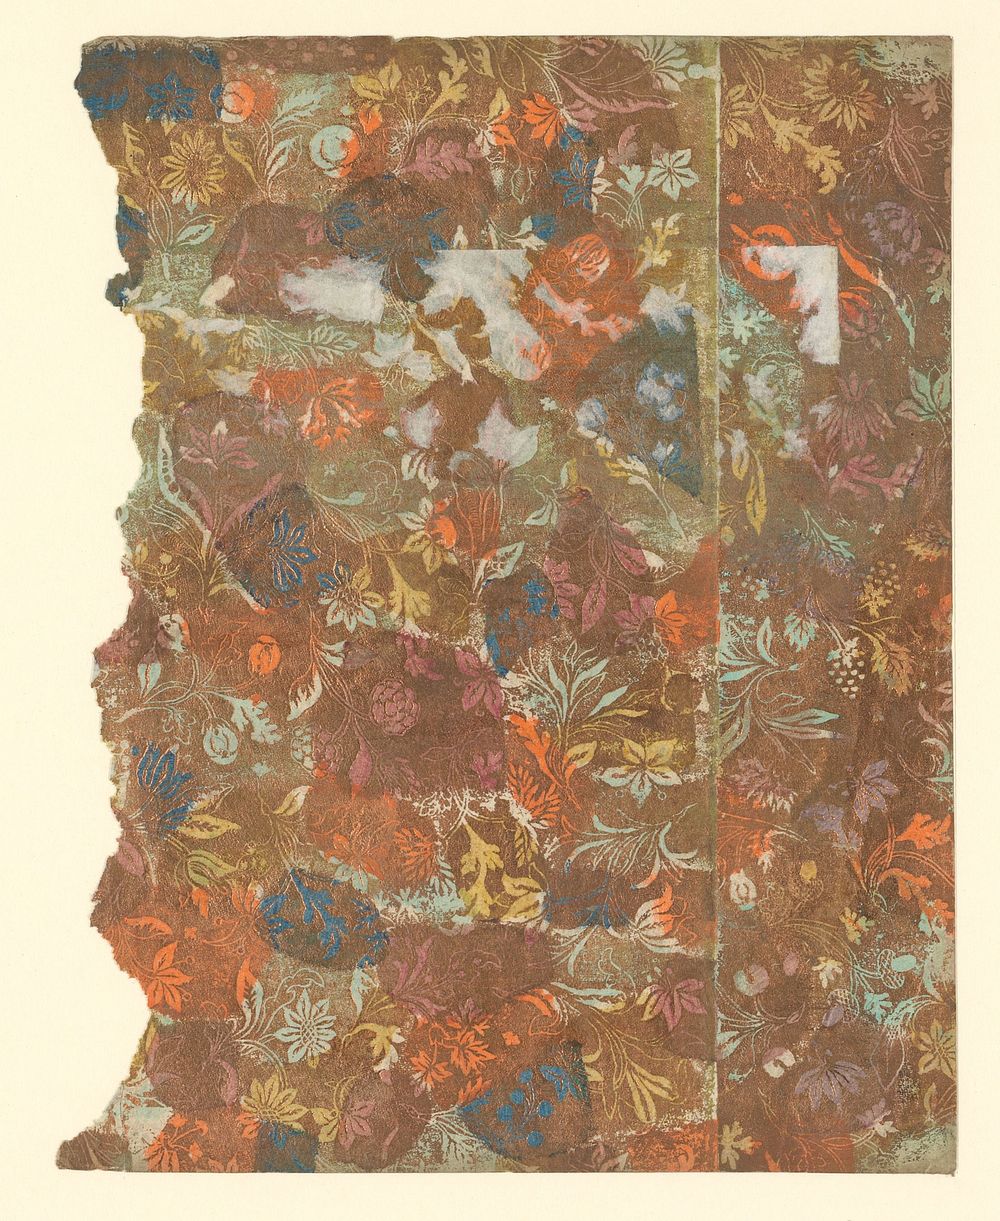 Blad met ranken met bloemen en vruchten (1700 - 1850) by anonymous